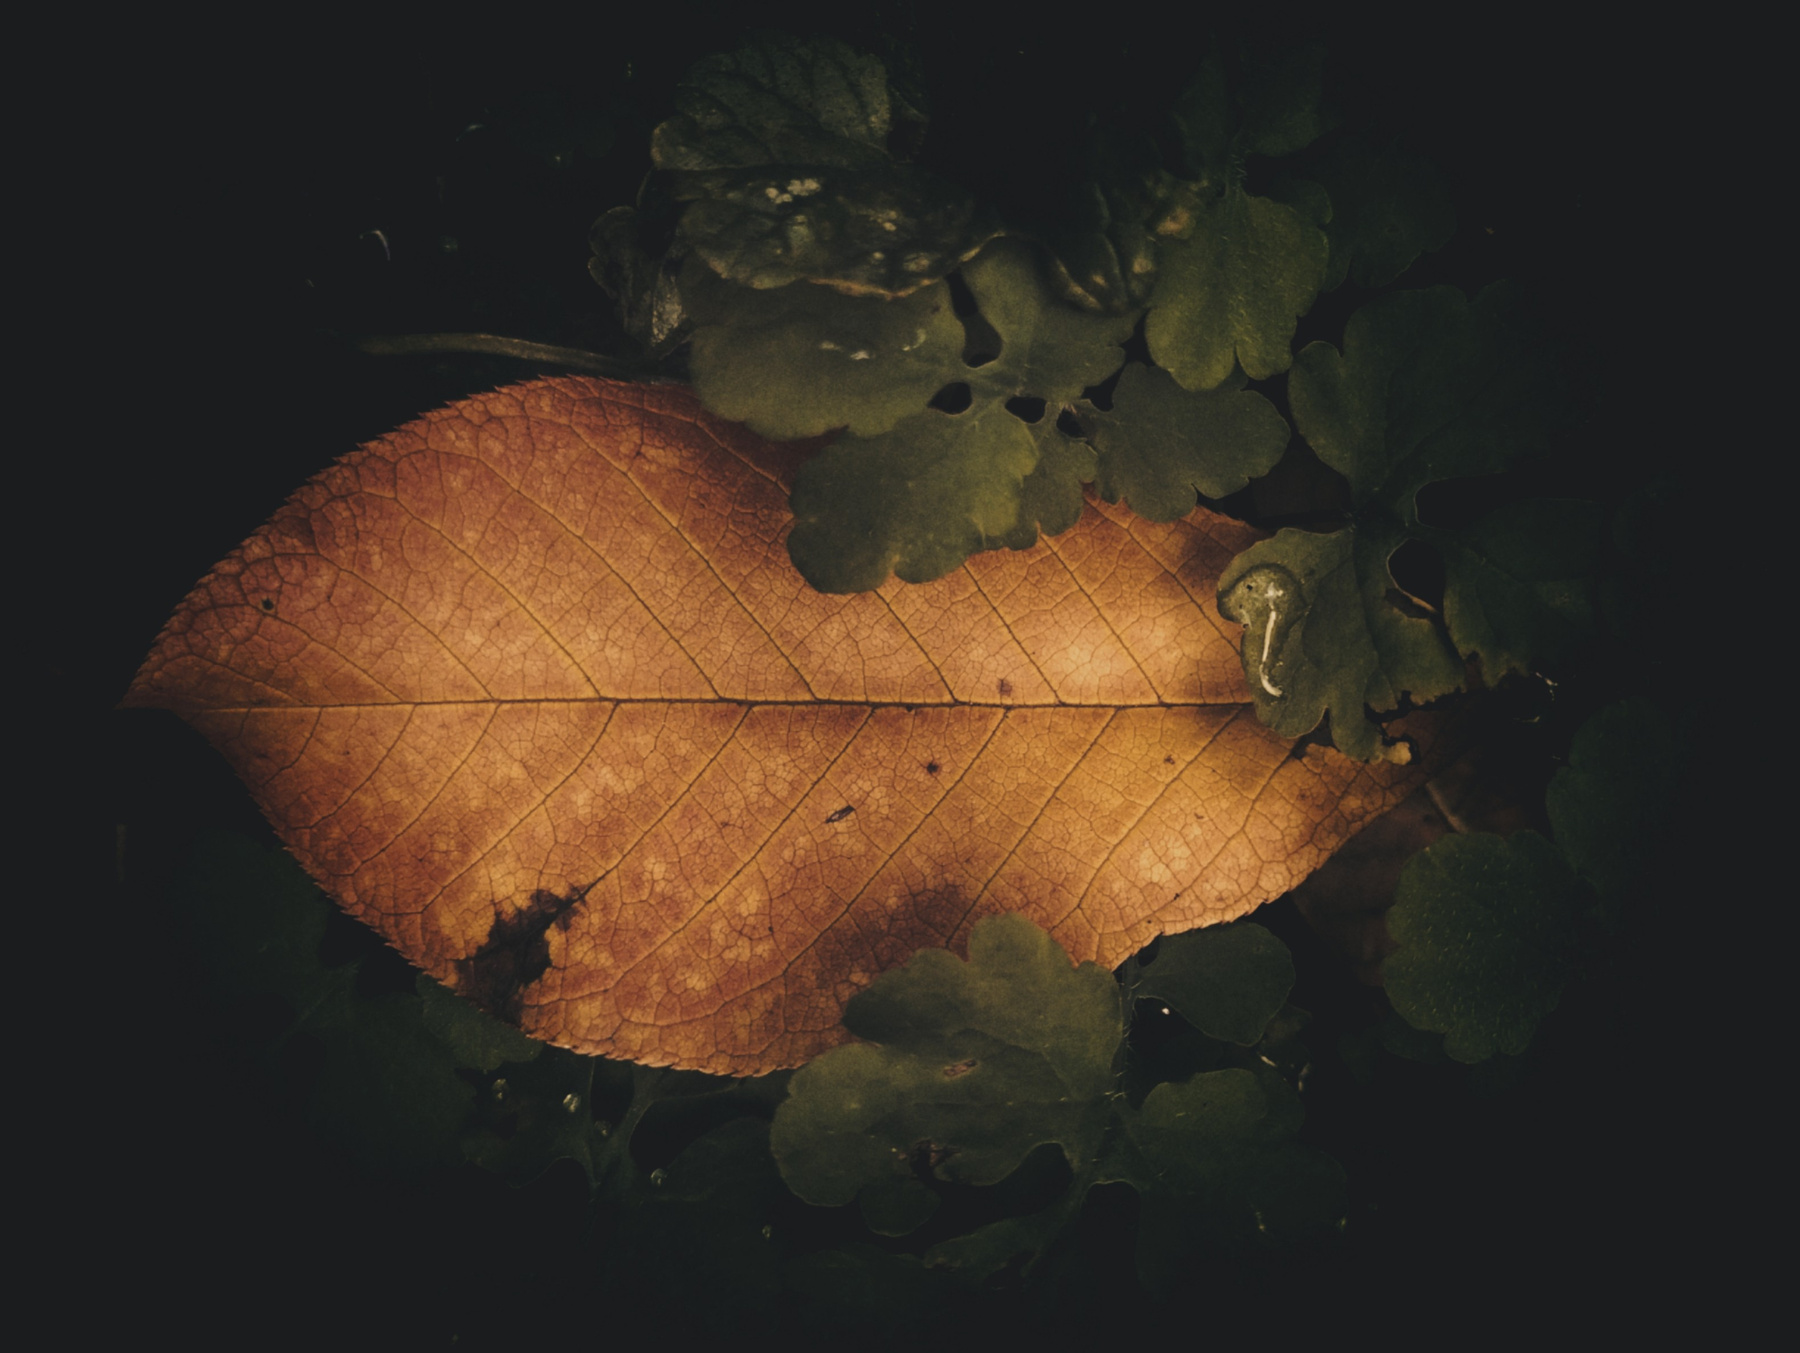 "Secrets" листва в сумерках после дождя сентябрь